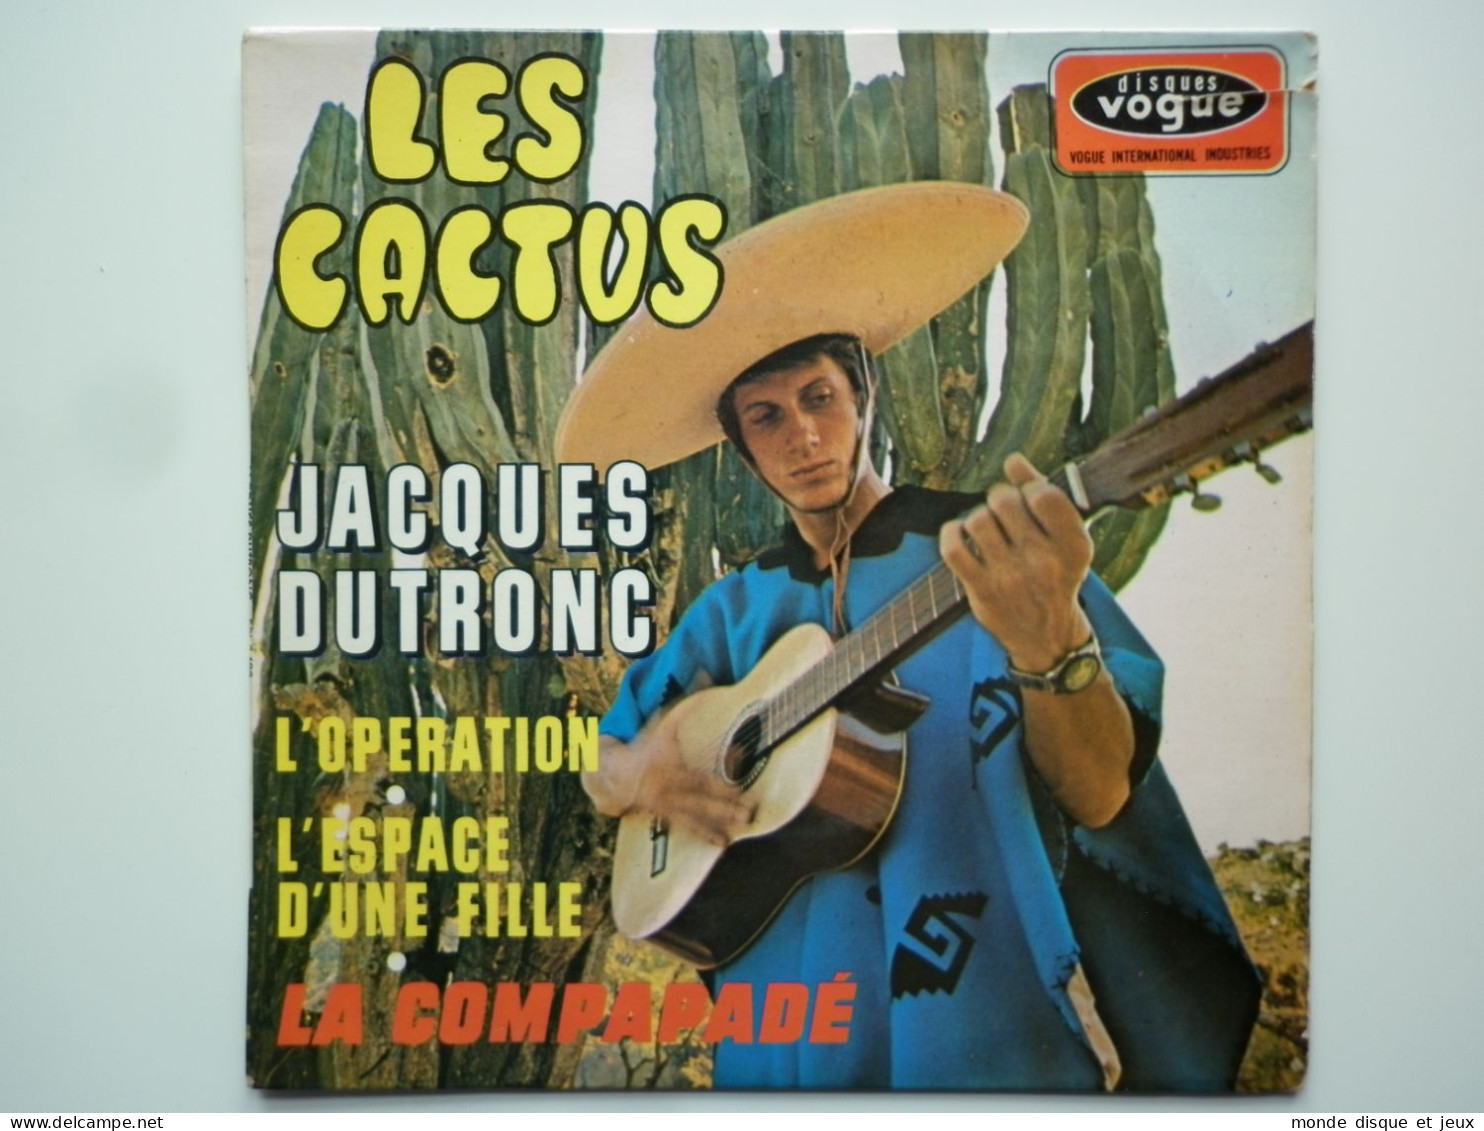 Jacques Dutronc 45Tours EP Vinyle Les Cactus - 45 Rpm - Maxi-Singles